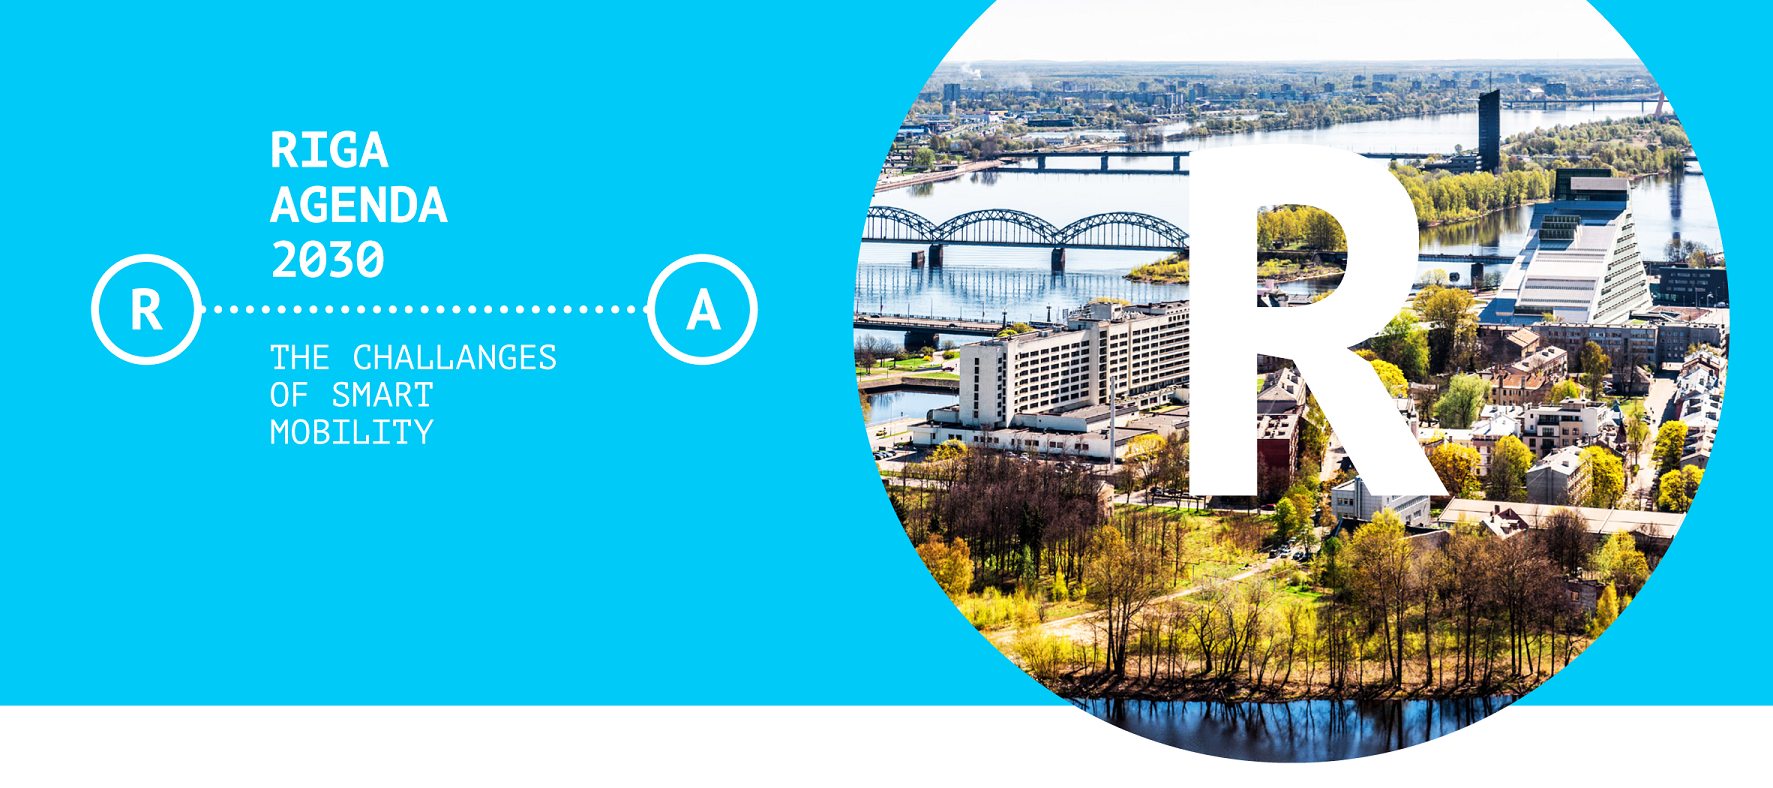 Norisināsies starptautisks seminārs par mobilitātes izaicinājumiem un iespējām Rīgas pilsētā “Riga Agenda 2030”